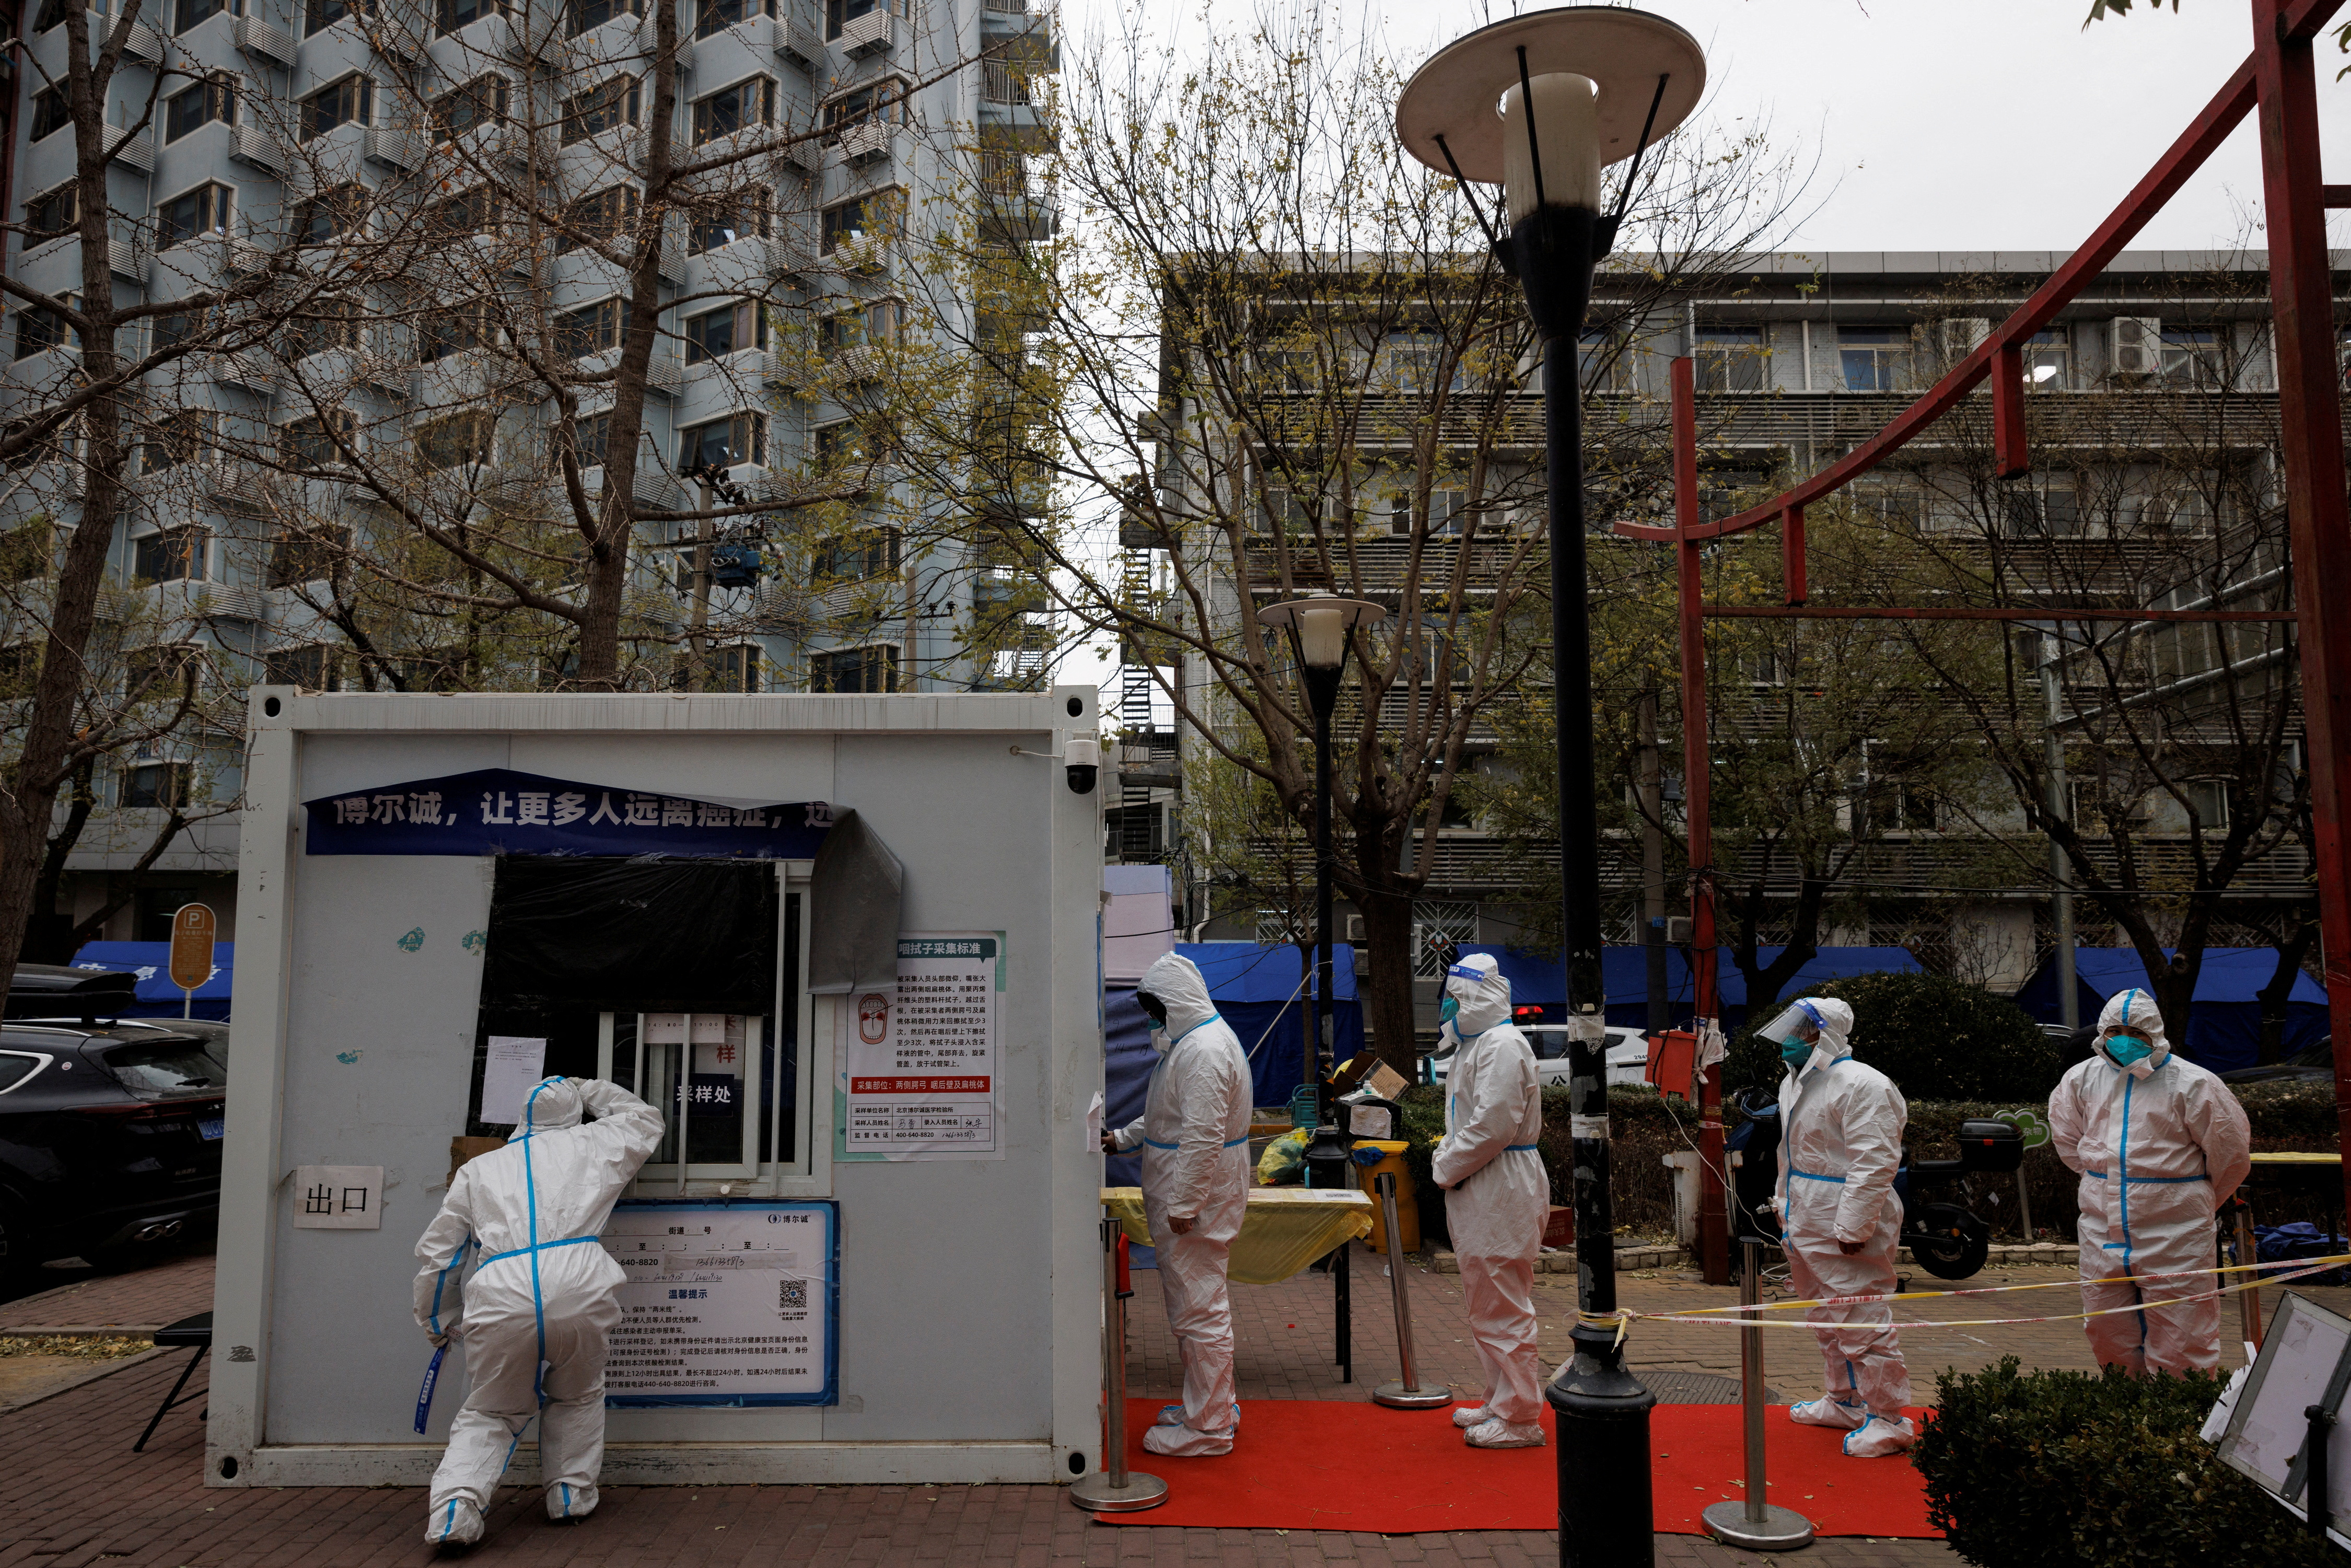 Trabajadores de prevención de epidemias con trajes protectores hacen fila para hacerse una prueba de hisopo mientras continúan los brotes de la enfermedad por coronavirus en Beijing (REUTERS/Thomas Peter)